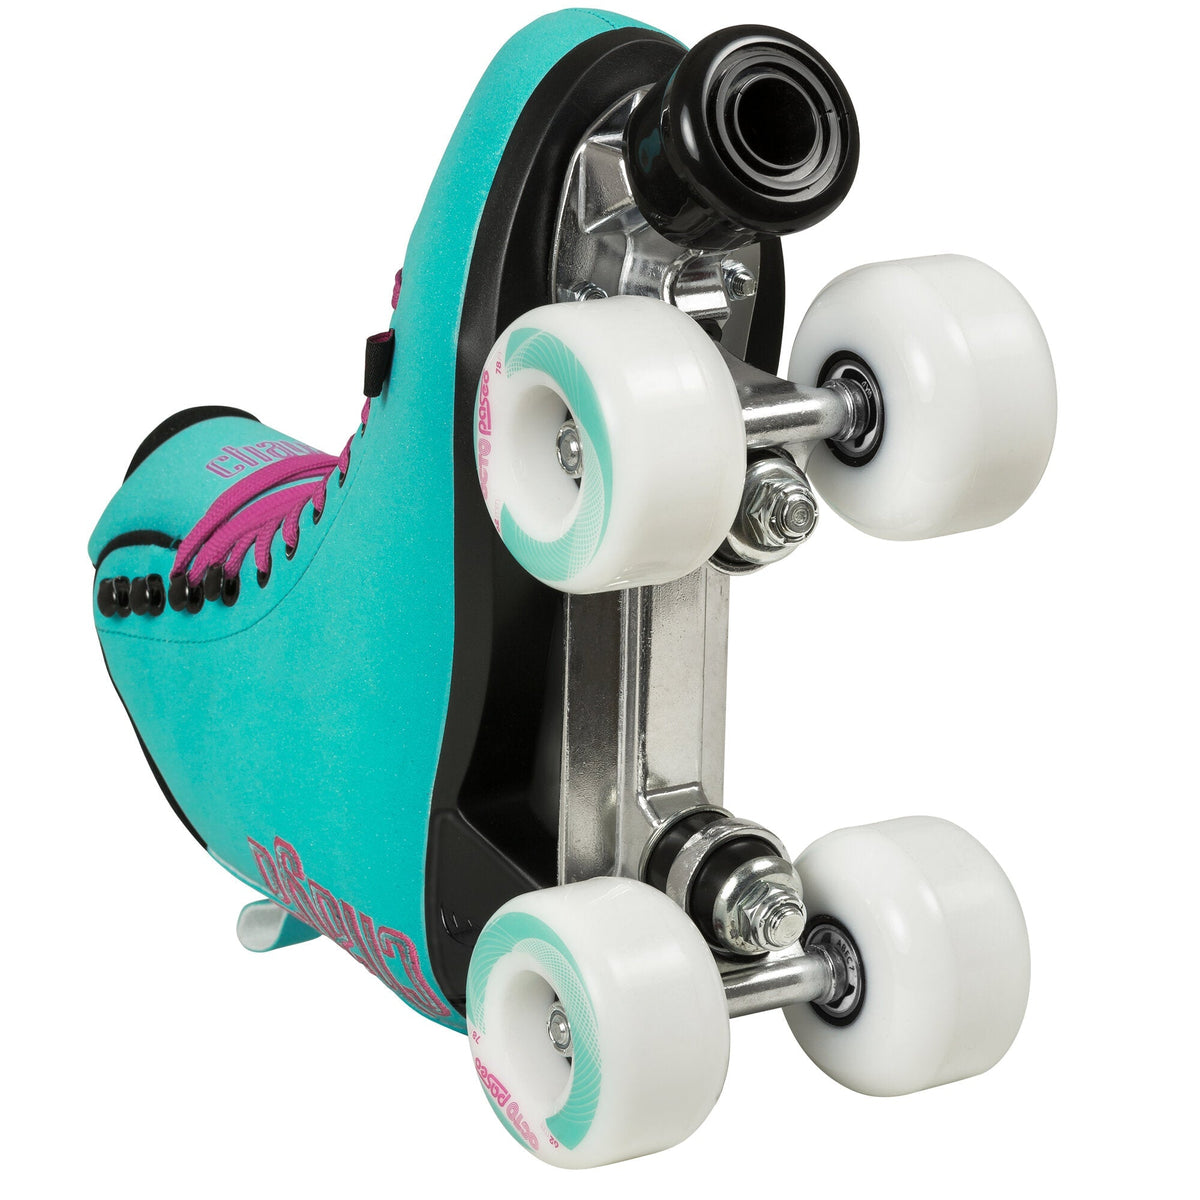 Chaya Melrose Deluxe Skate - Turquoise Roller Skates